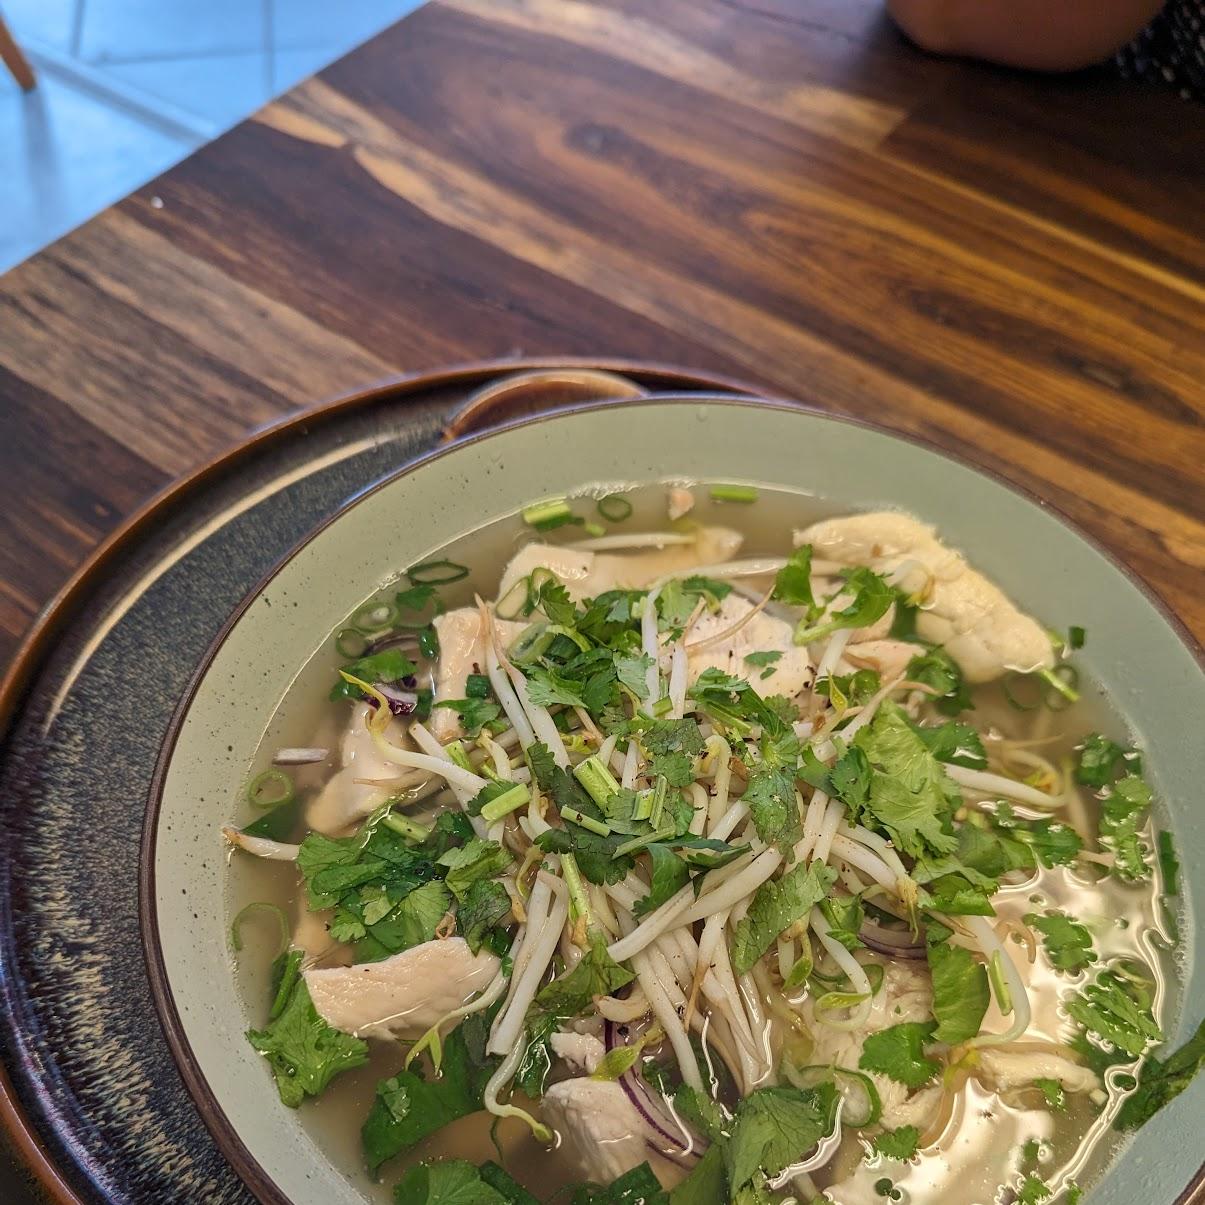 Restaurant "Vietnamesisches Fastfood" in Goch